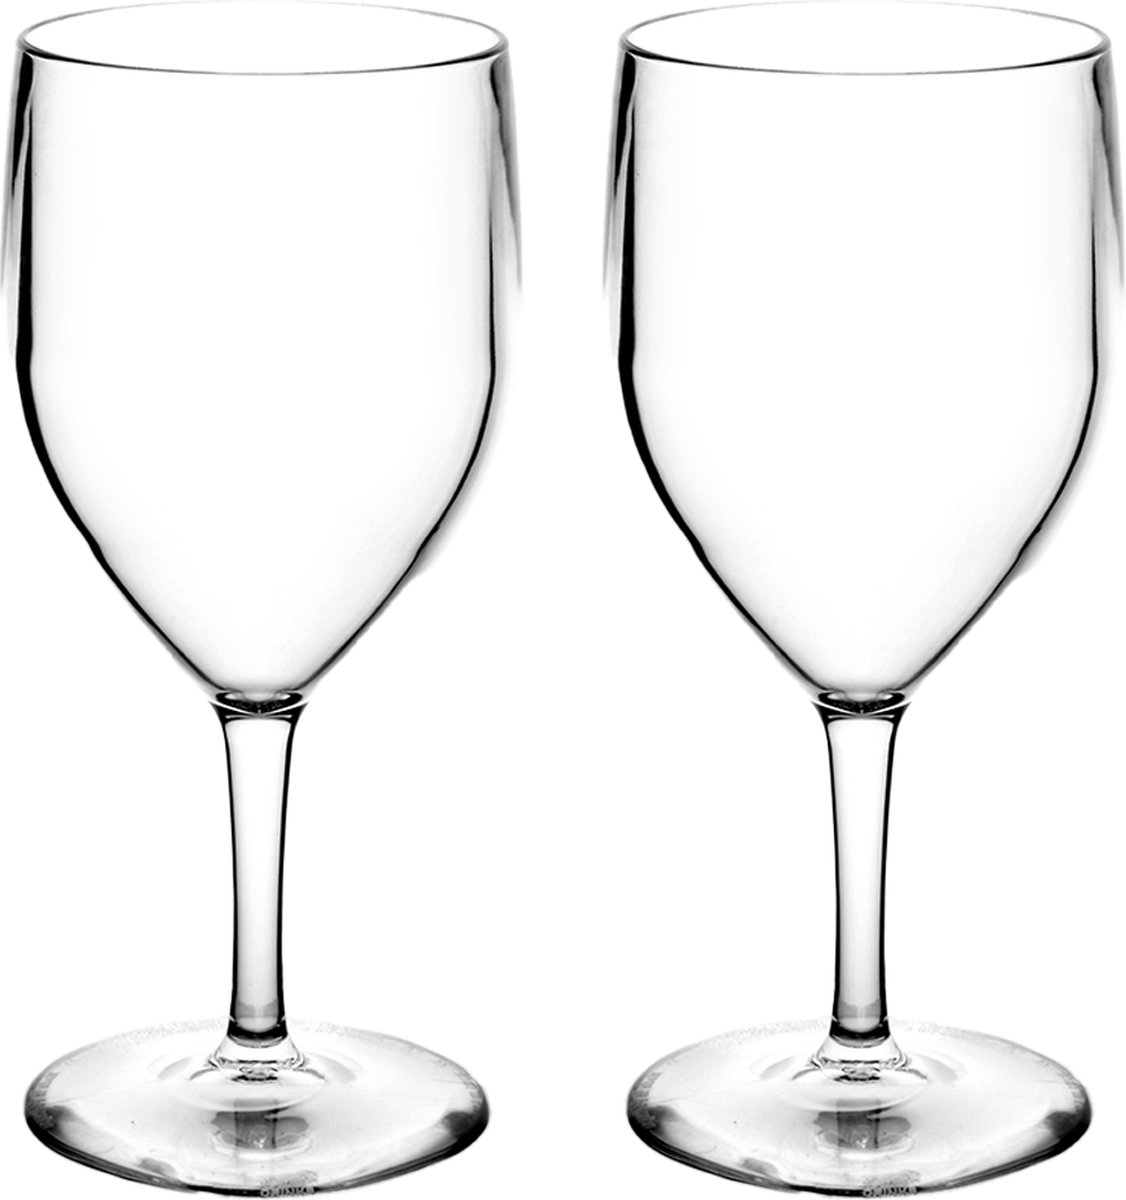 RBDRINKS Wijnglazen - Kunststof Wijnglazen - Wijnglazen Set - Witte Wijnglazen - Camping Glazen - Kunststof Glazen - Plastic Glazen - 27cl - Transparant - 2 Stuks